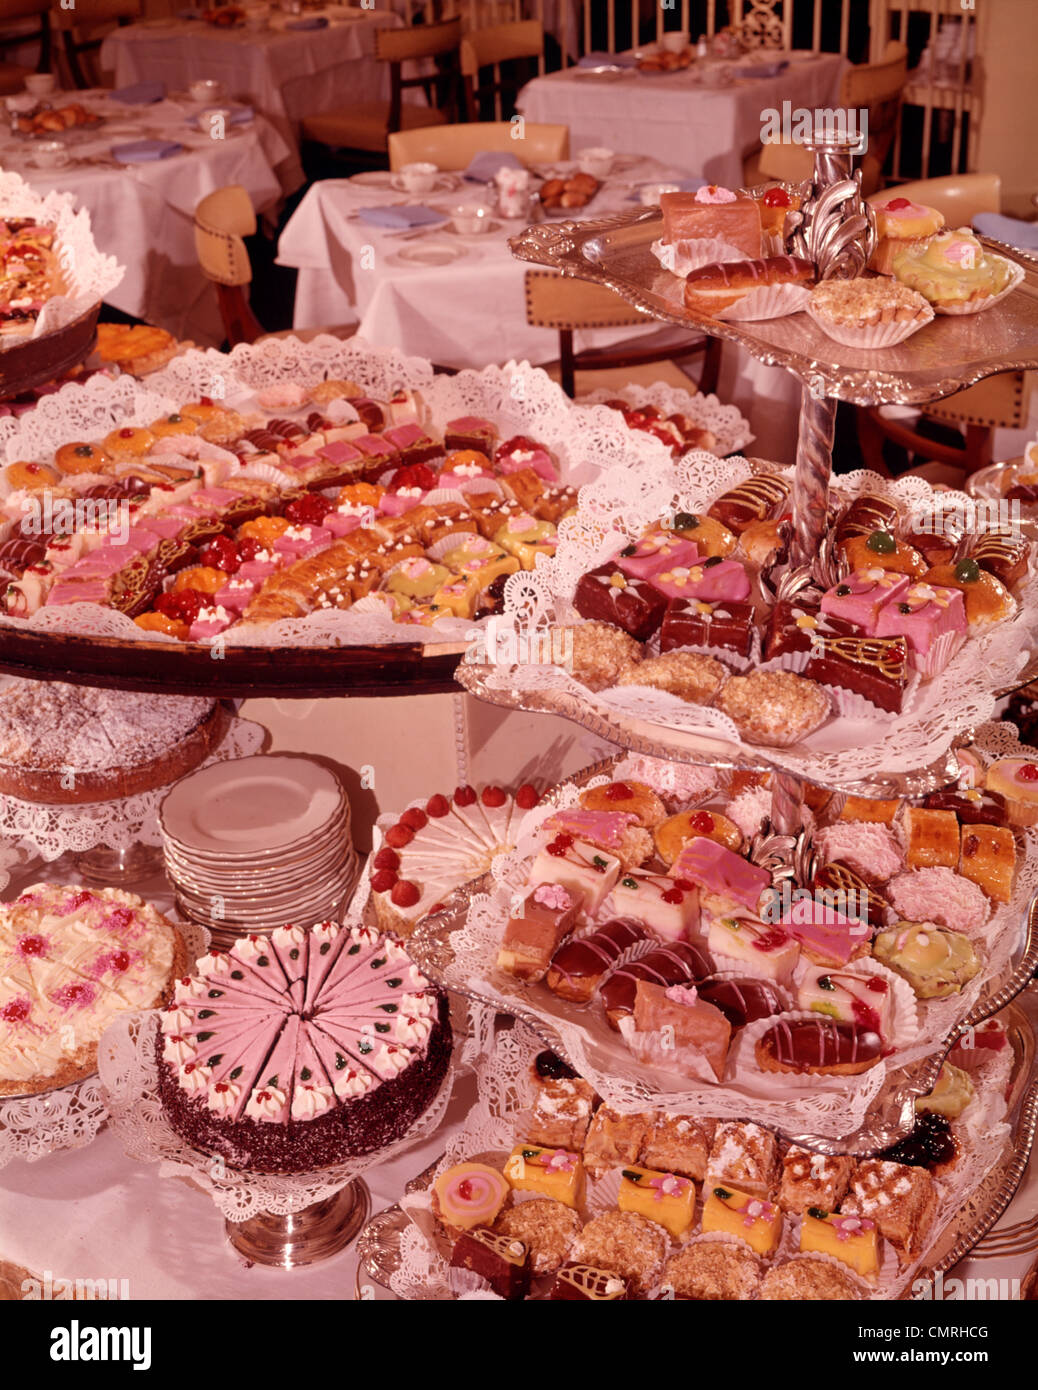 Années 1950 Années 1960 buffet de desserts petits fours viennoiseries gâteaux sucré rose Banque D'Images